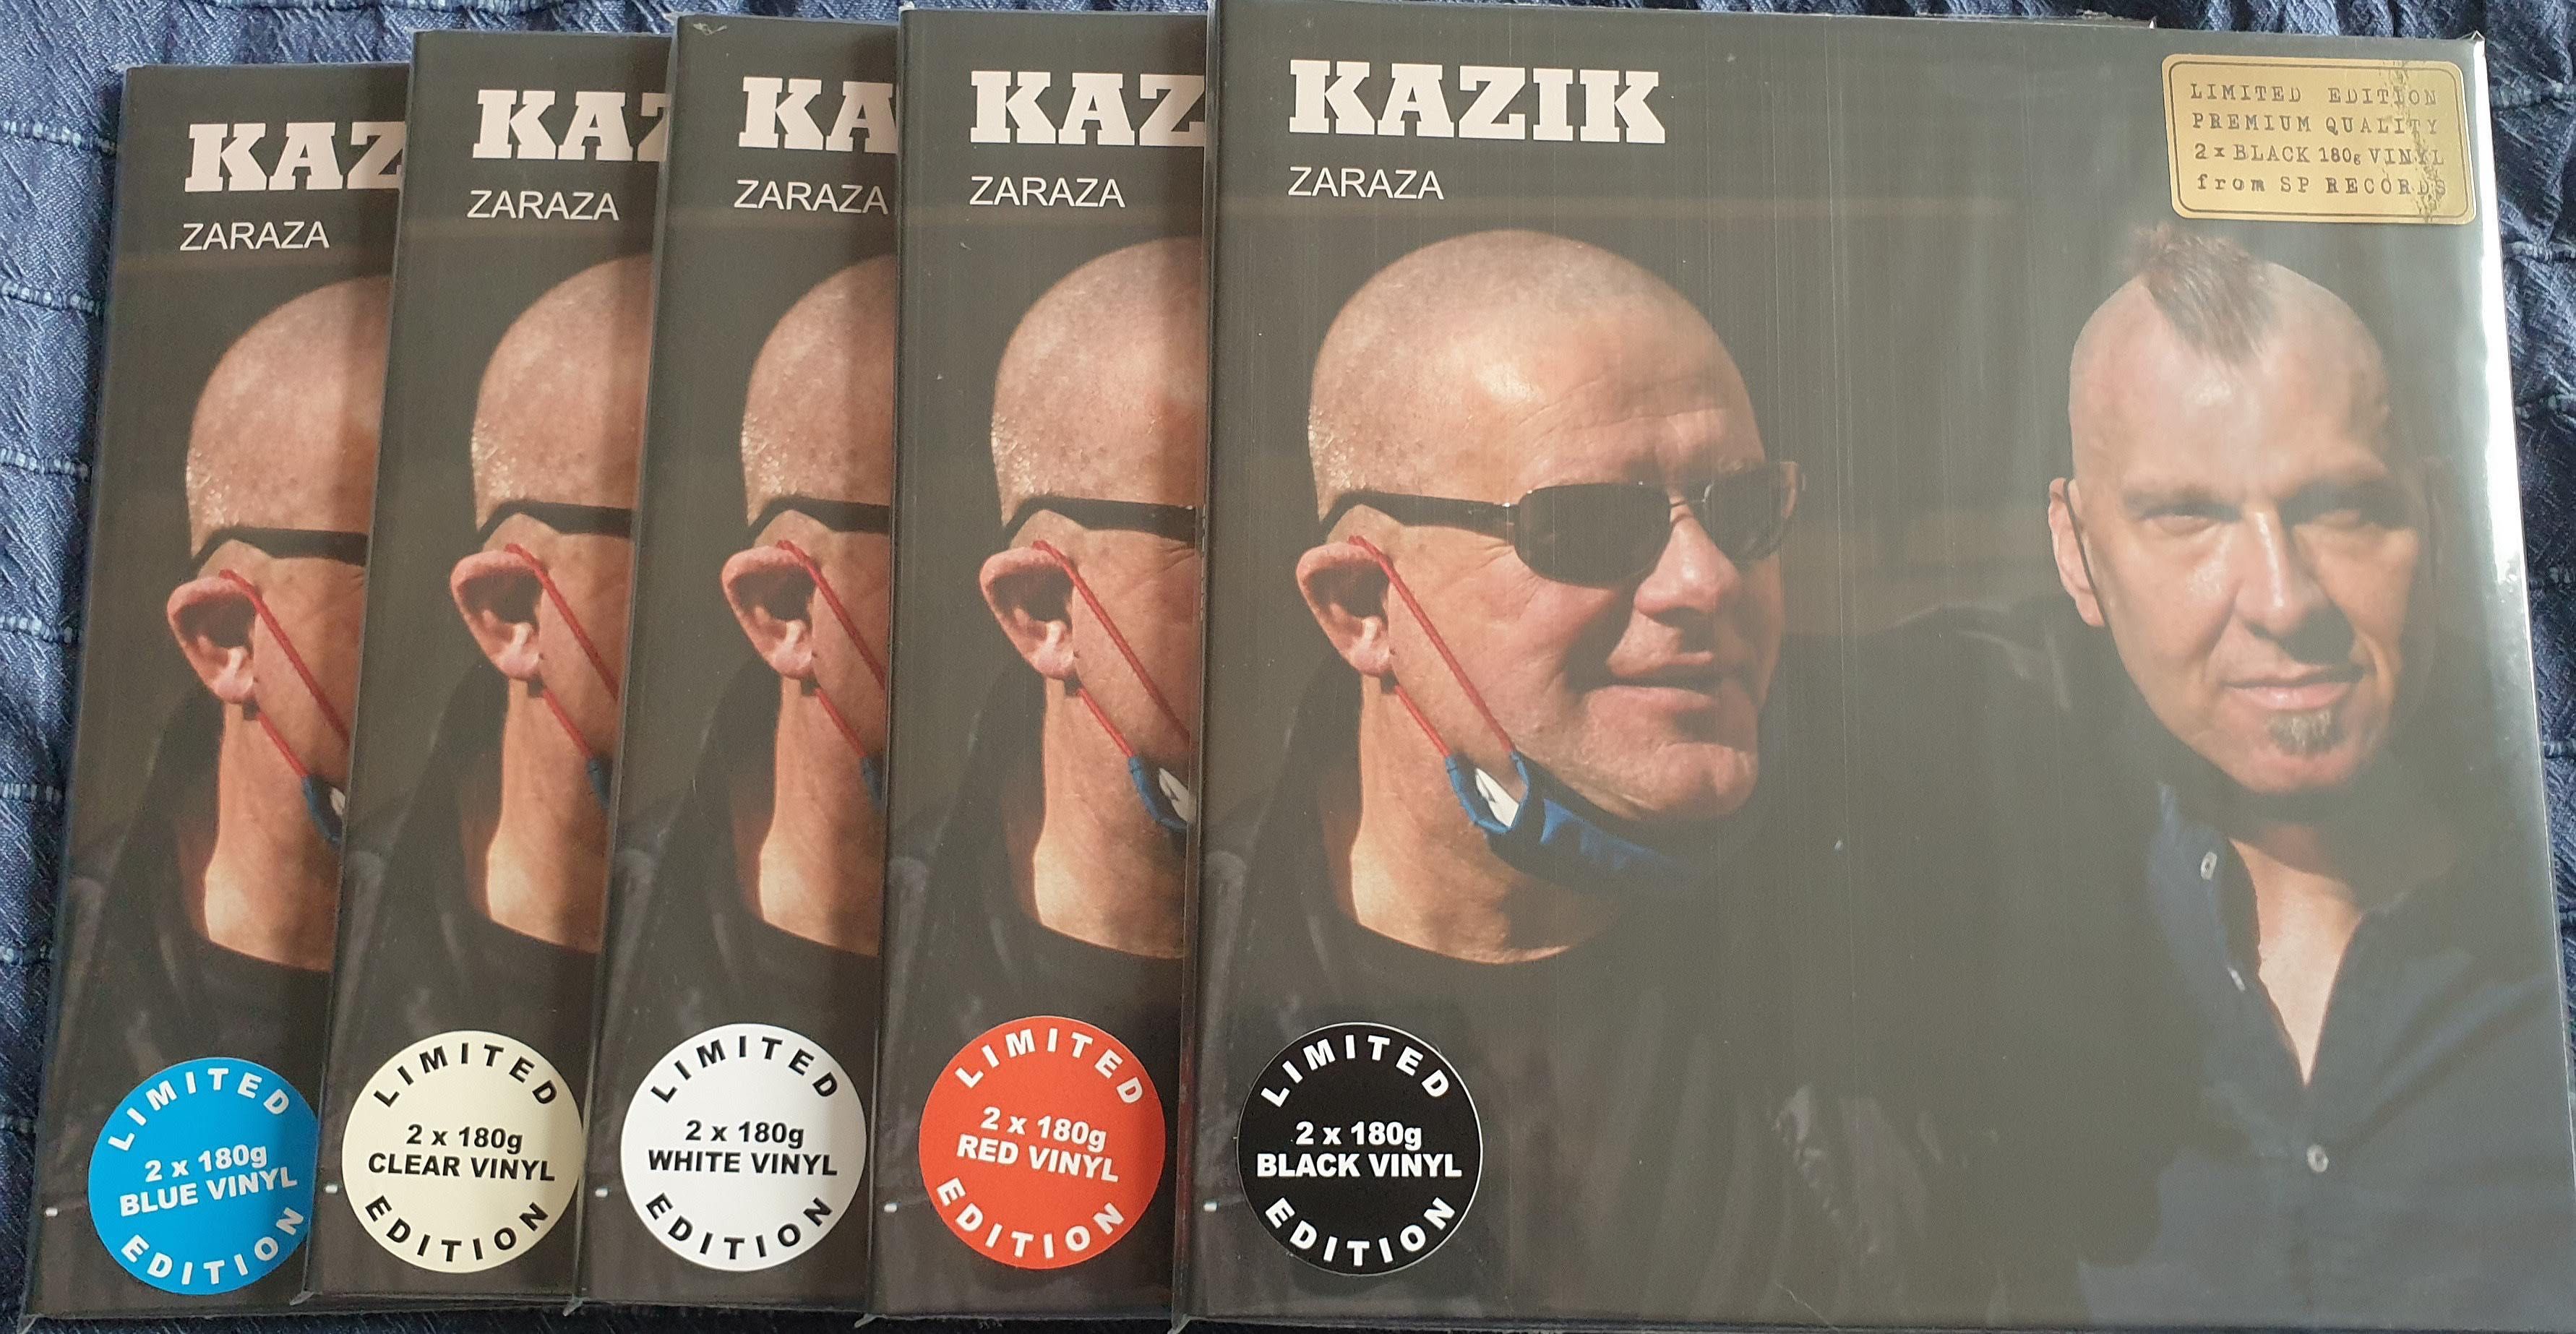 Nowa płyta w folii: Kazik Zaraza Vinyl LP BLACK